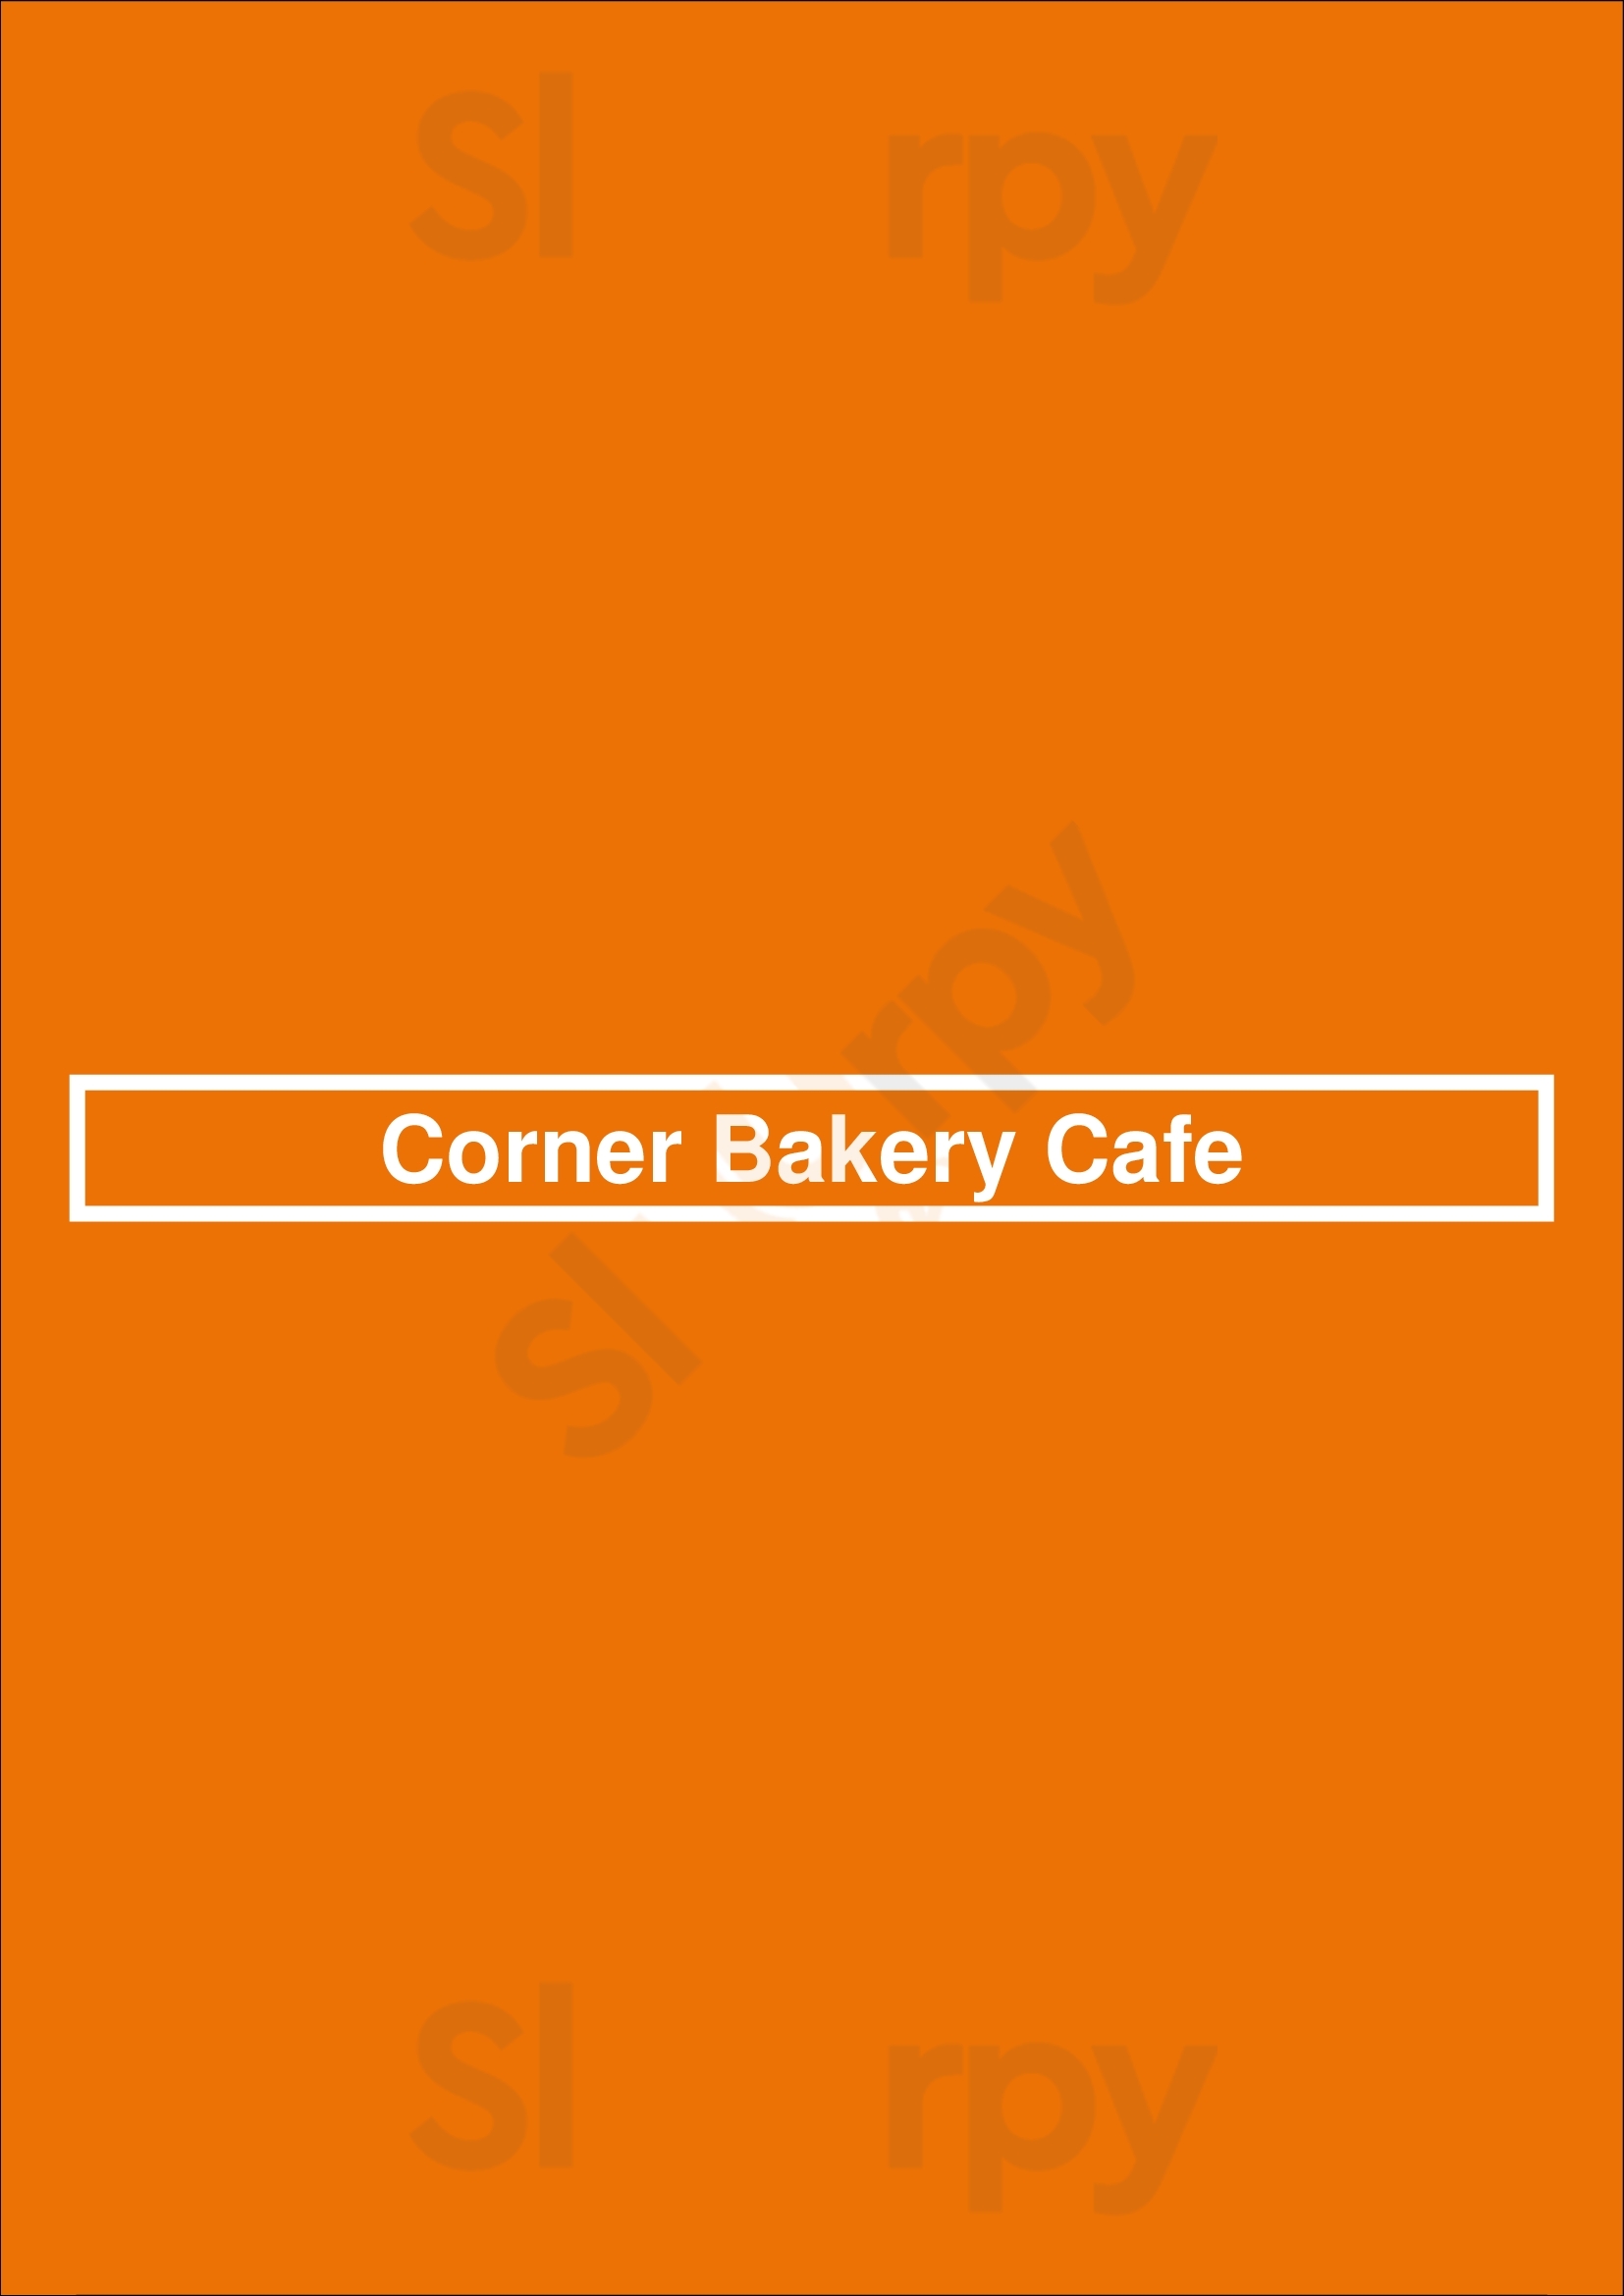 Corner Bakery Cafe Fort Worth Menu - 1